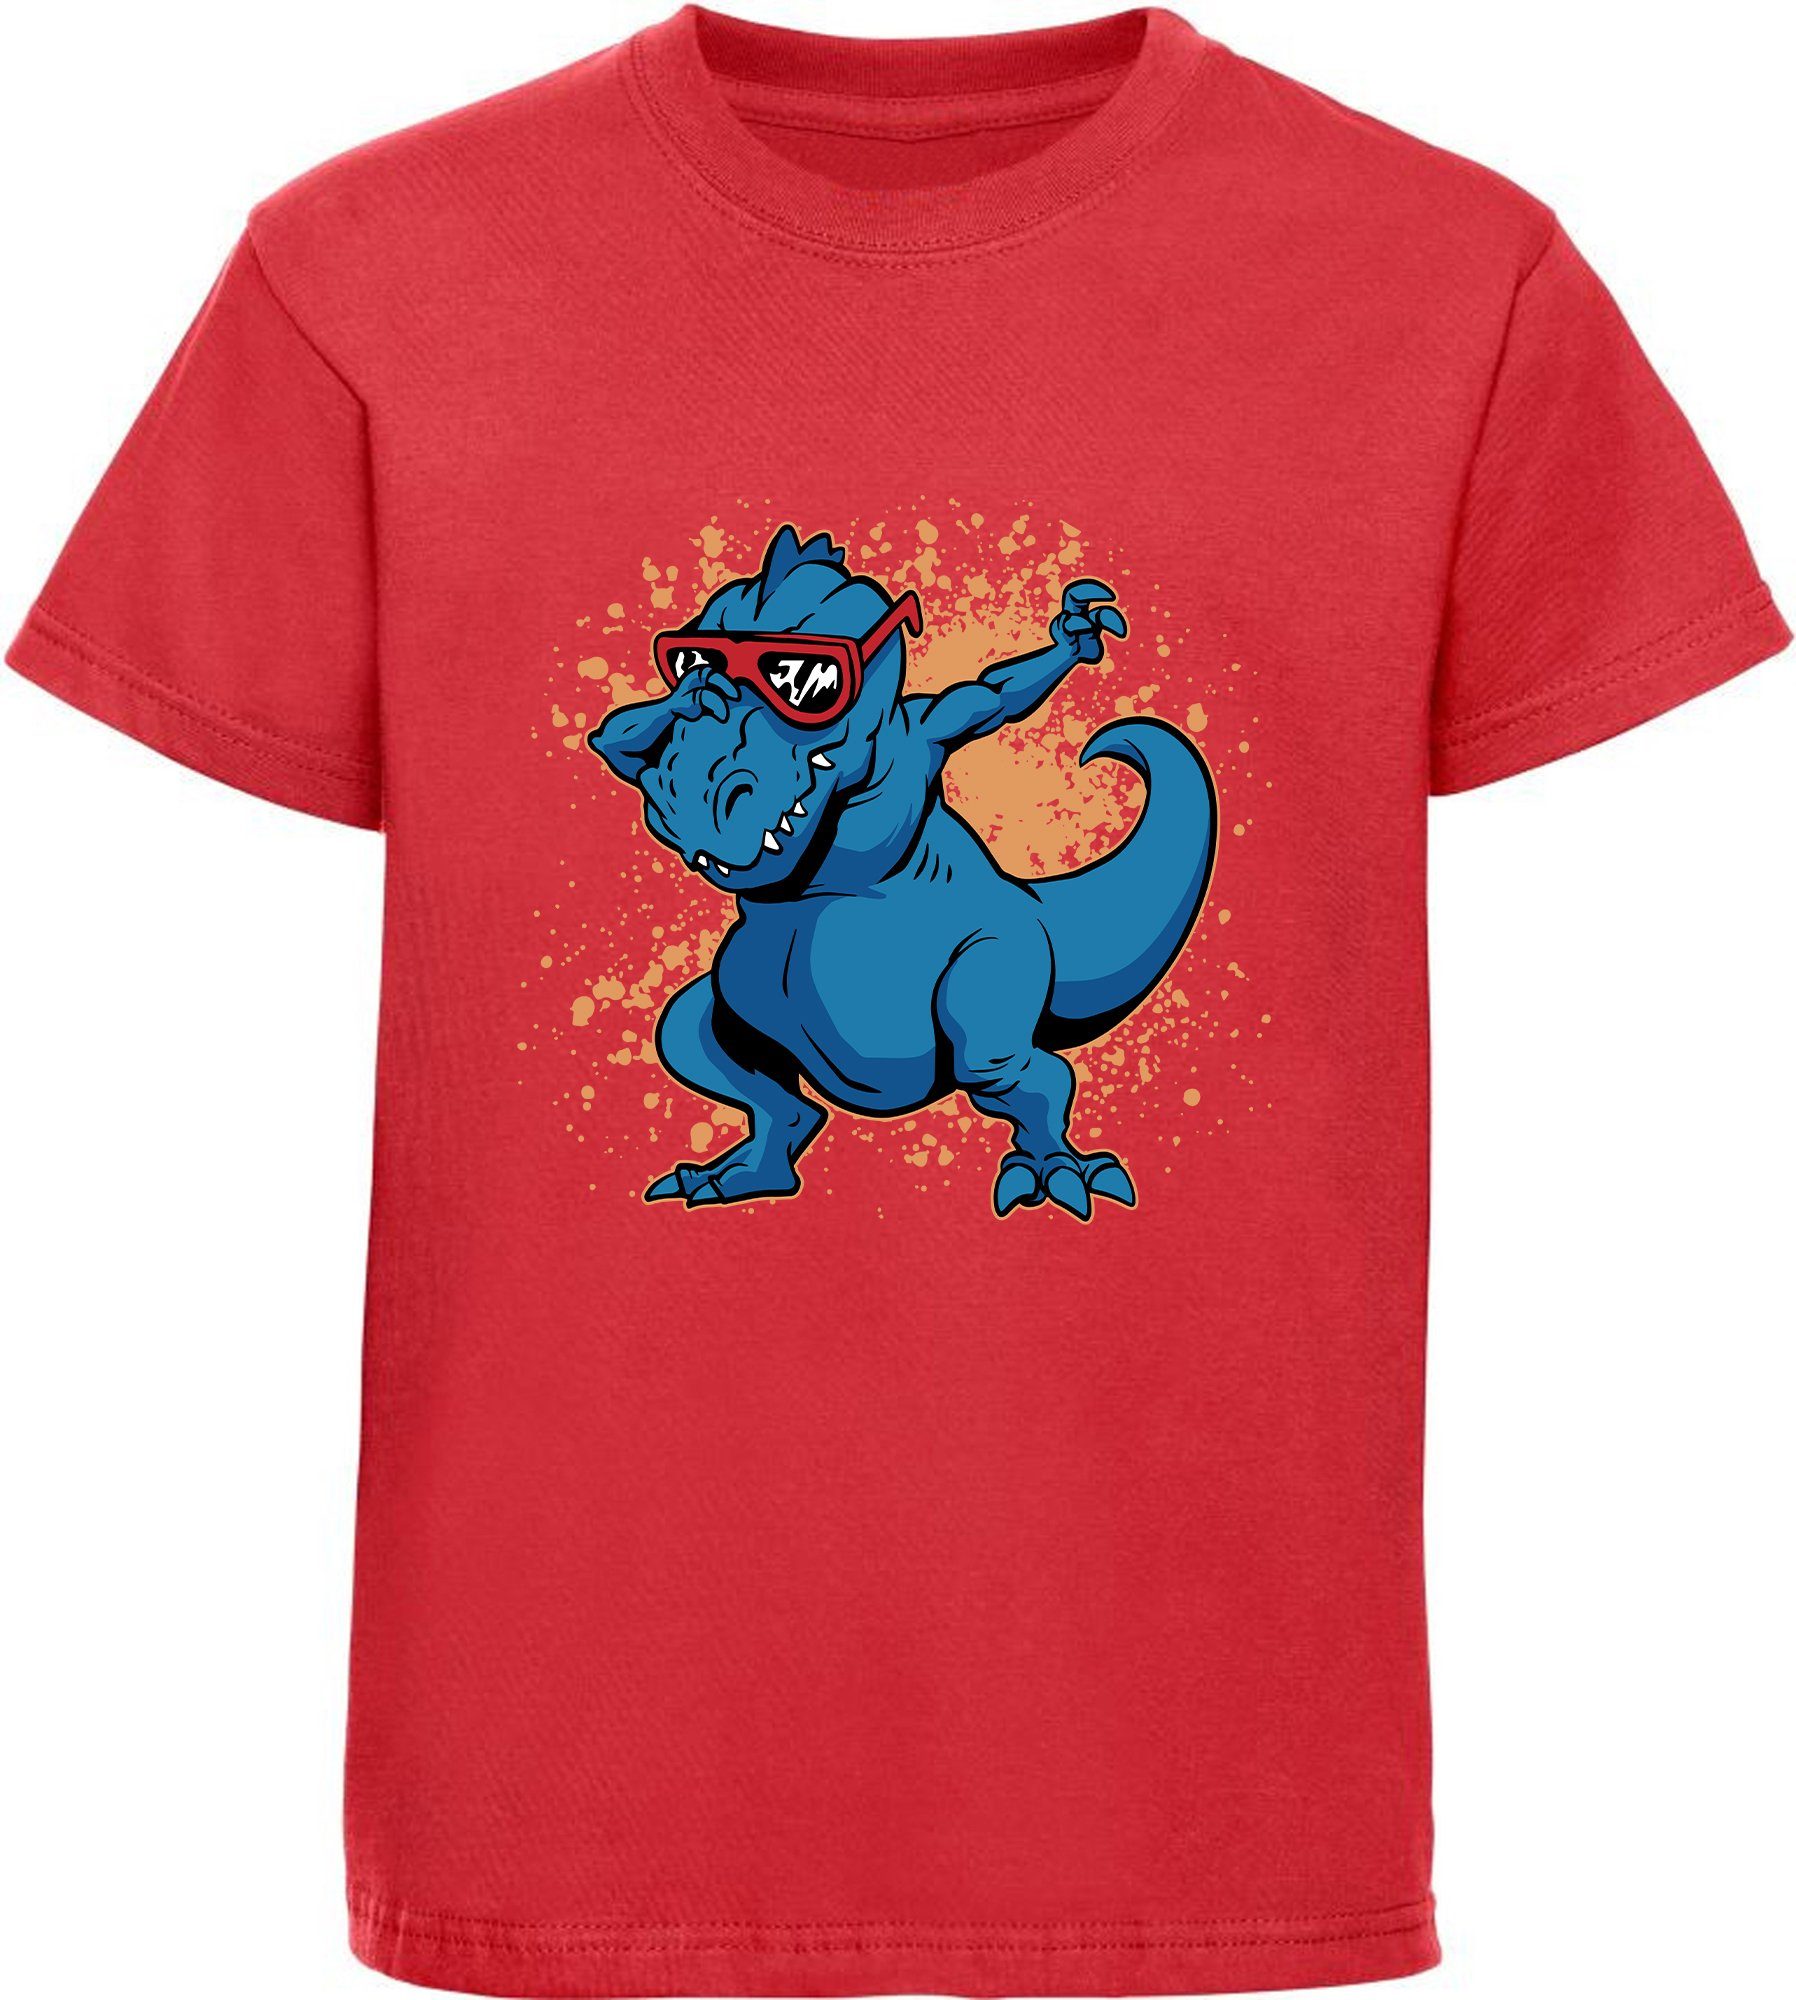 MyDesign24 T-Shirt bedrucktes Kinder T-Shirt T-Rex mit Brille am tanzen 100% Baumwolle mit Dino Aufdruck, rot i49